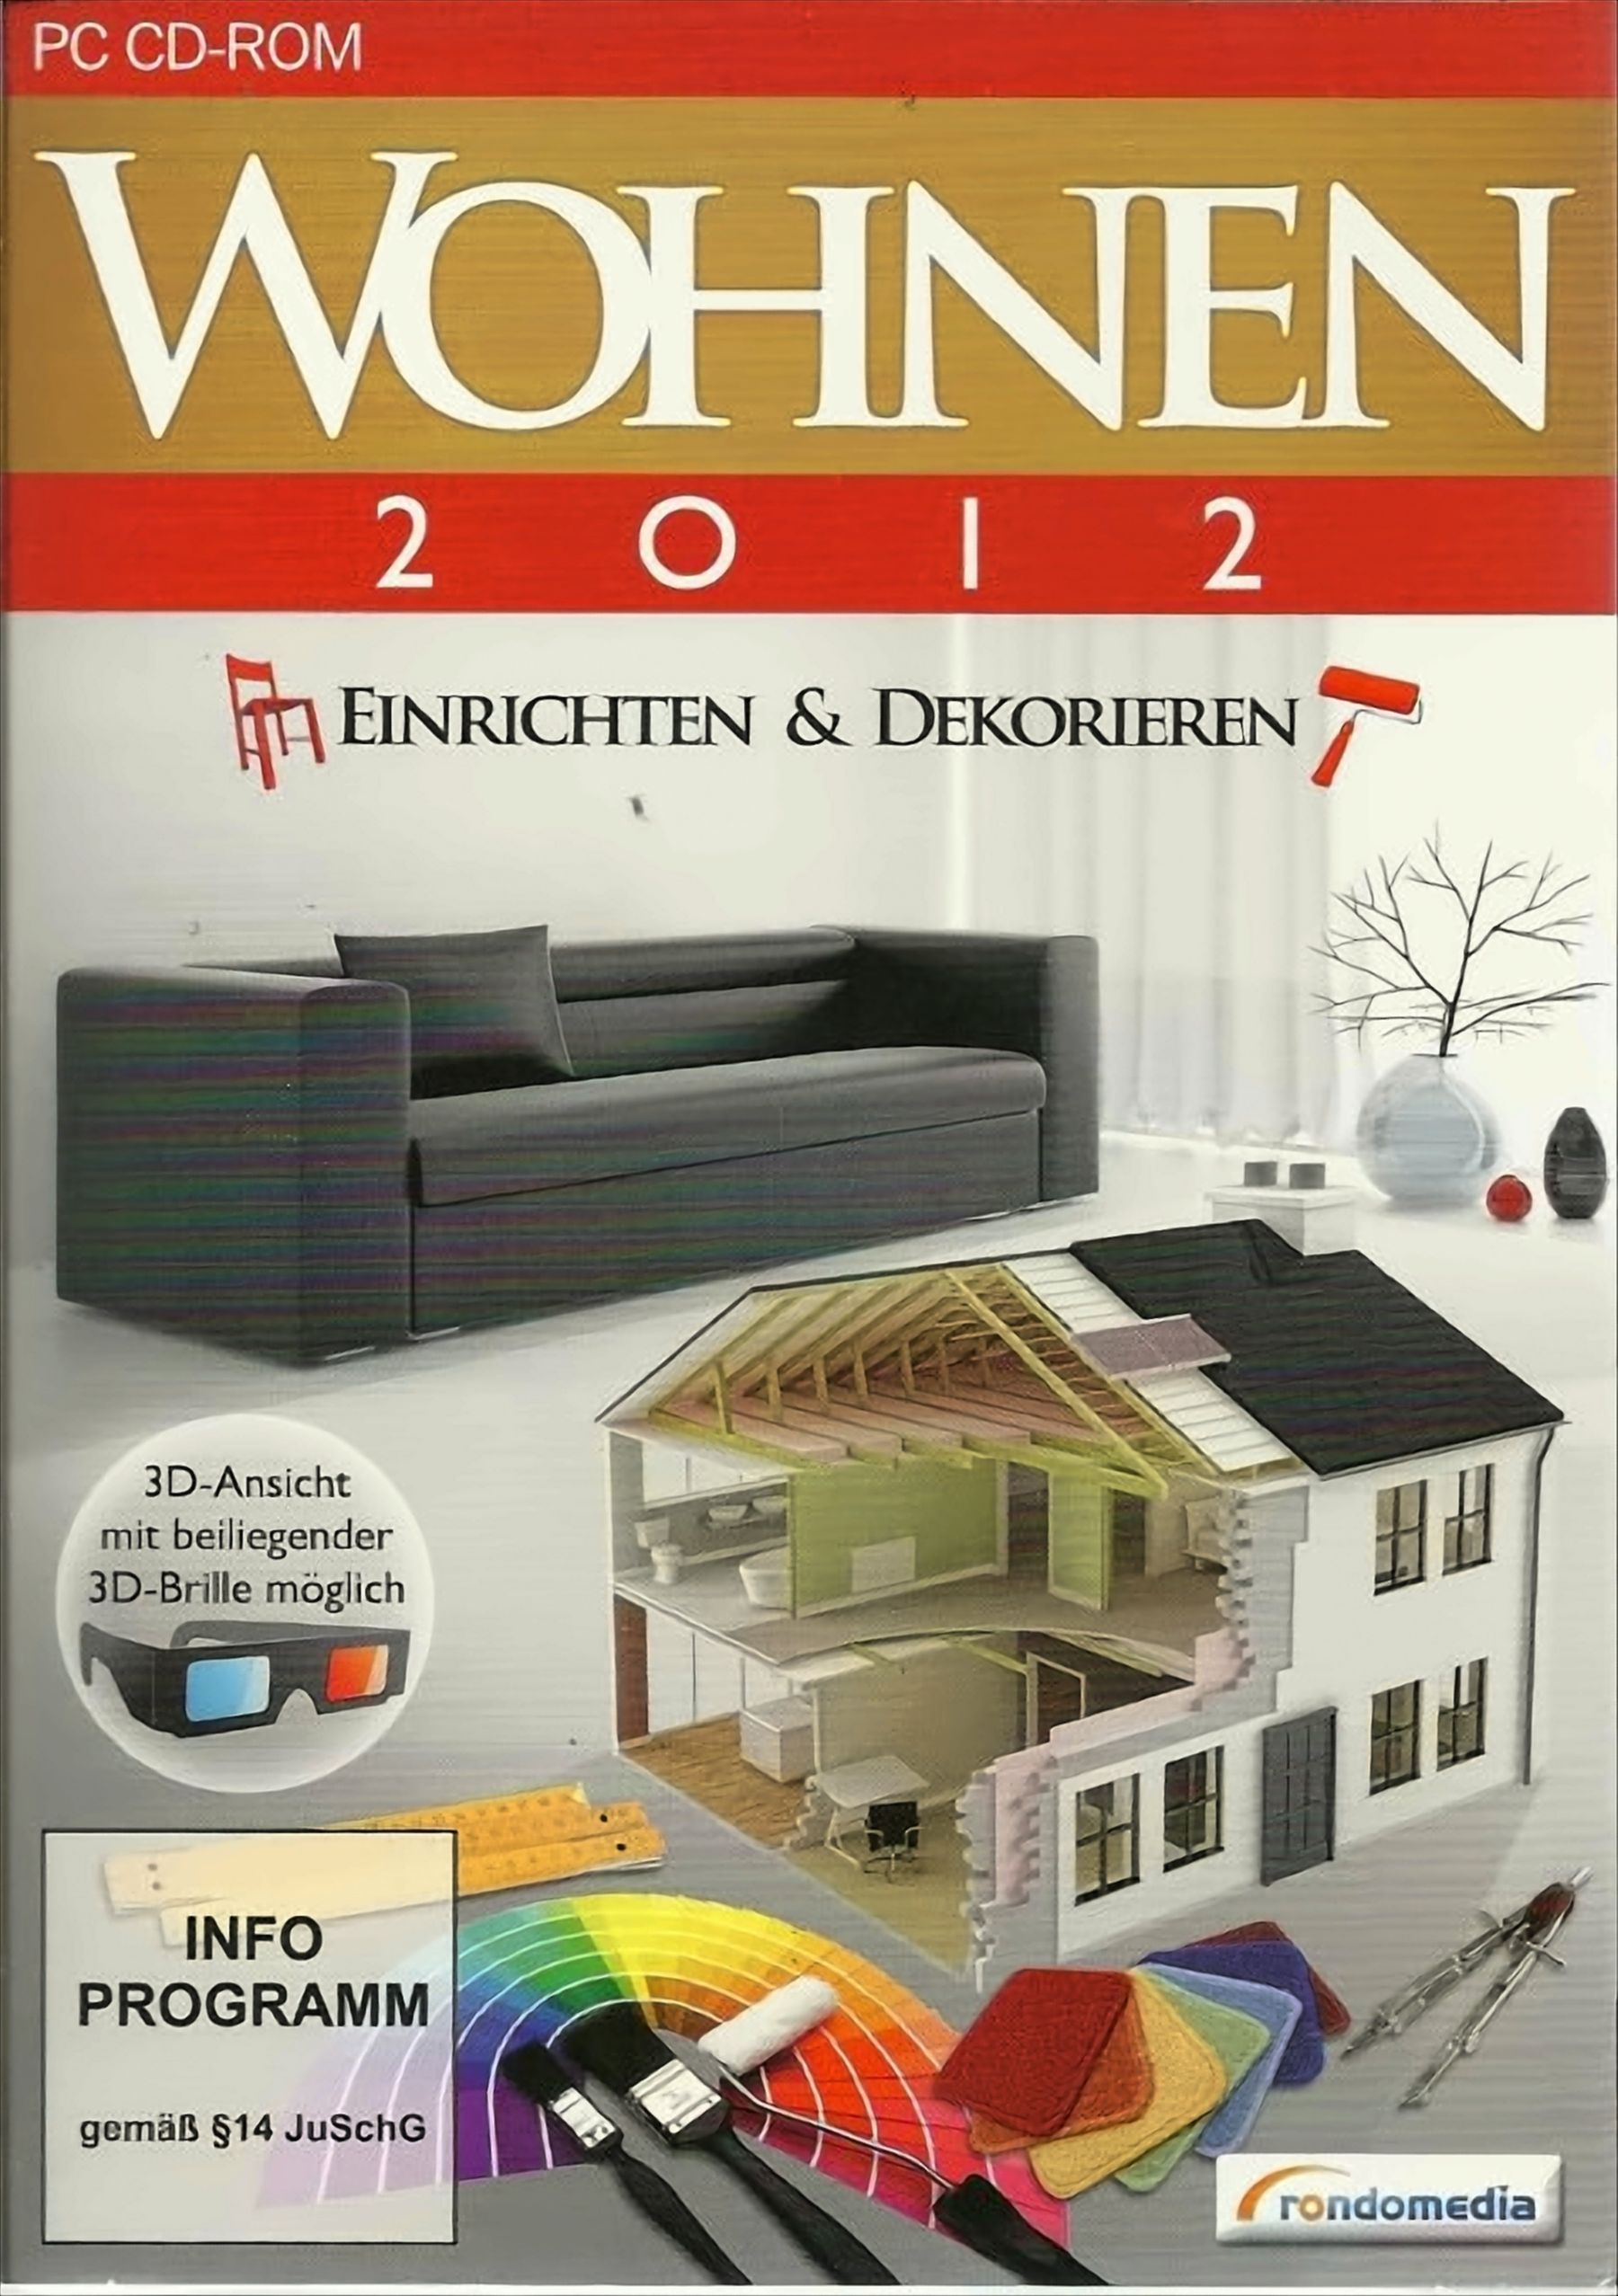 Dekorieren - Einrichten & [PC] 2012 Wohnen -